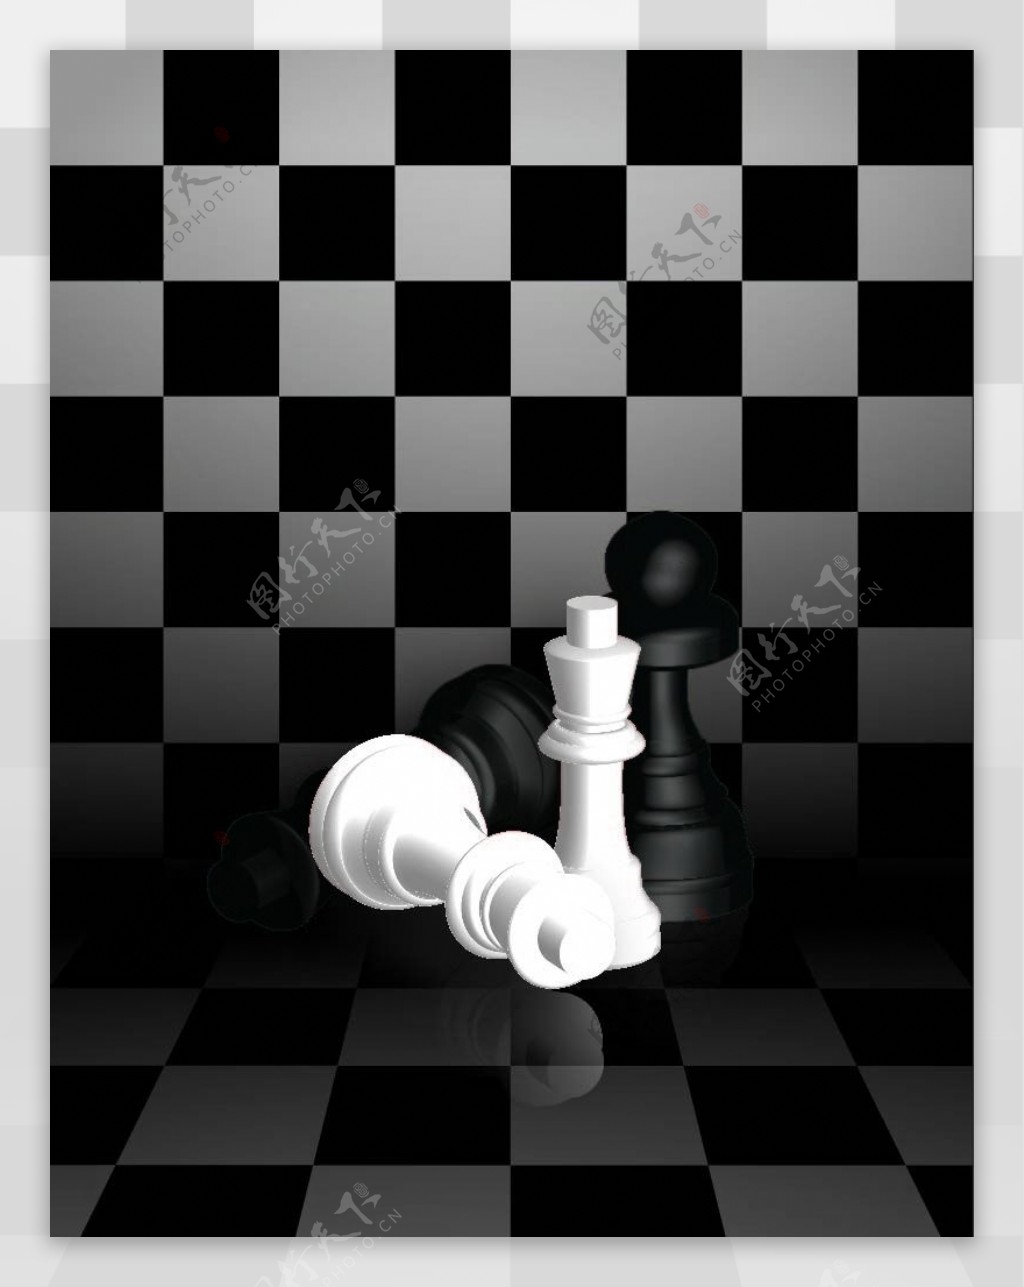 国际象棋设计